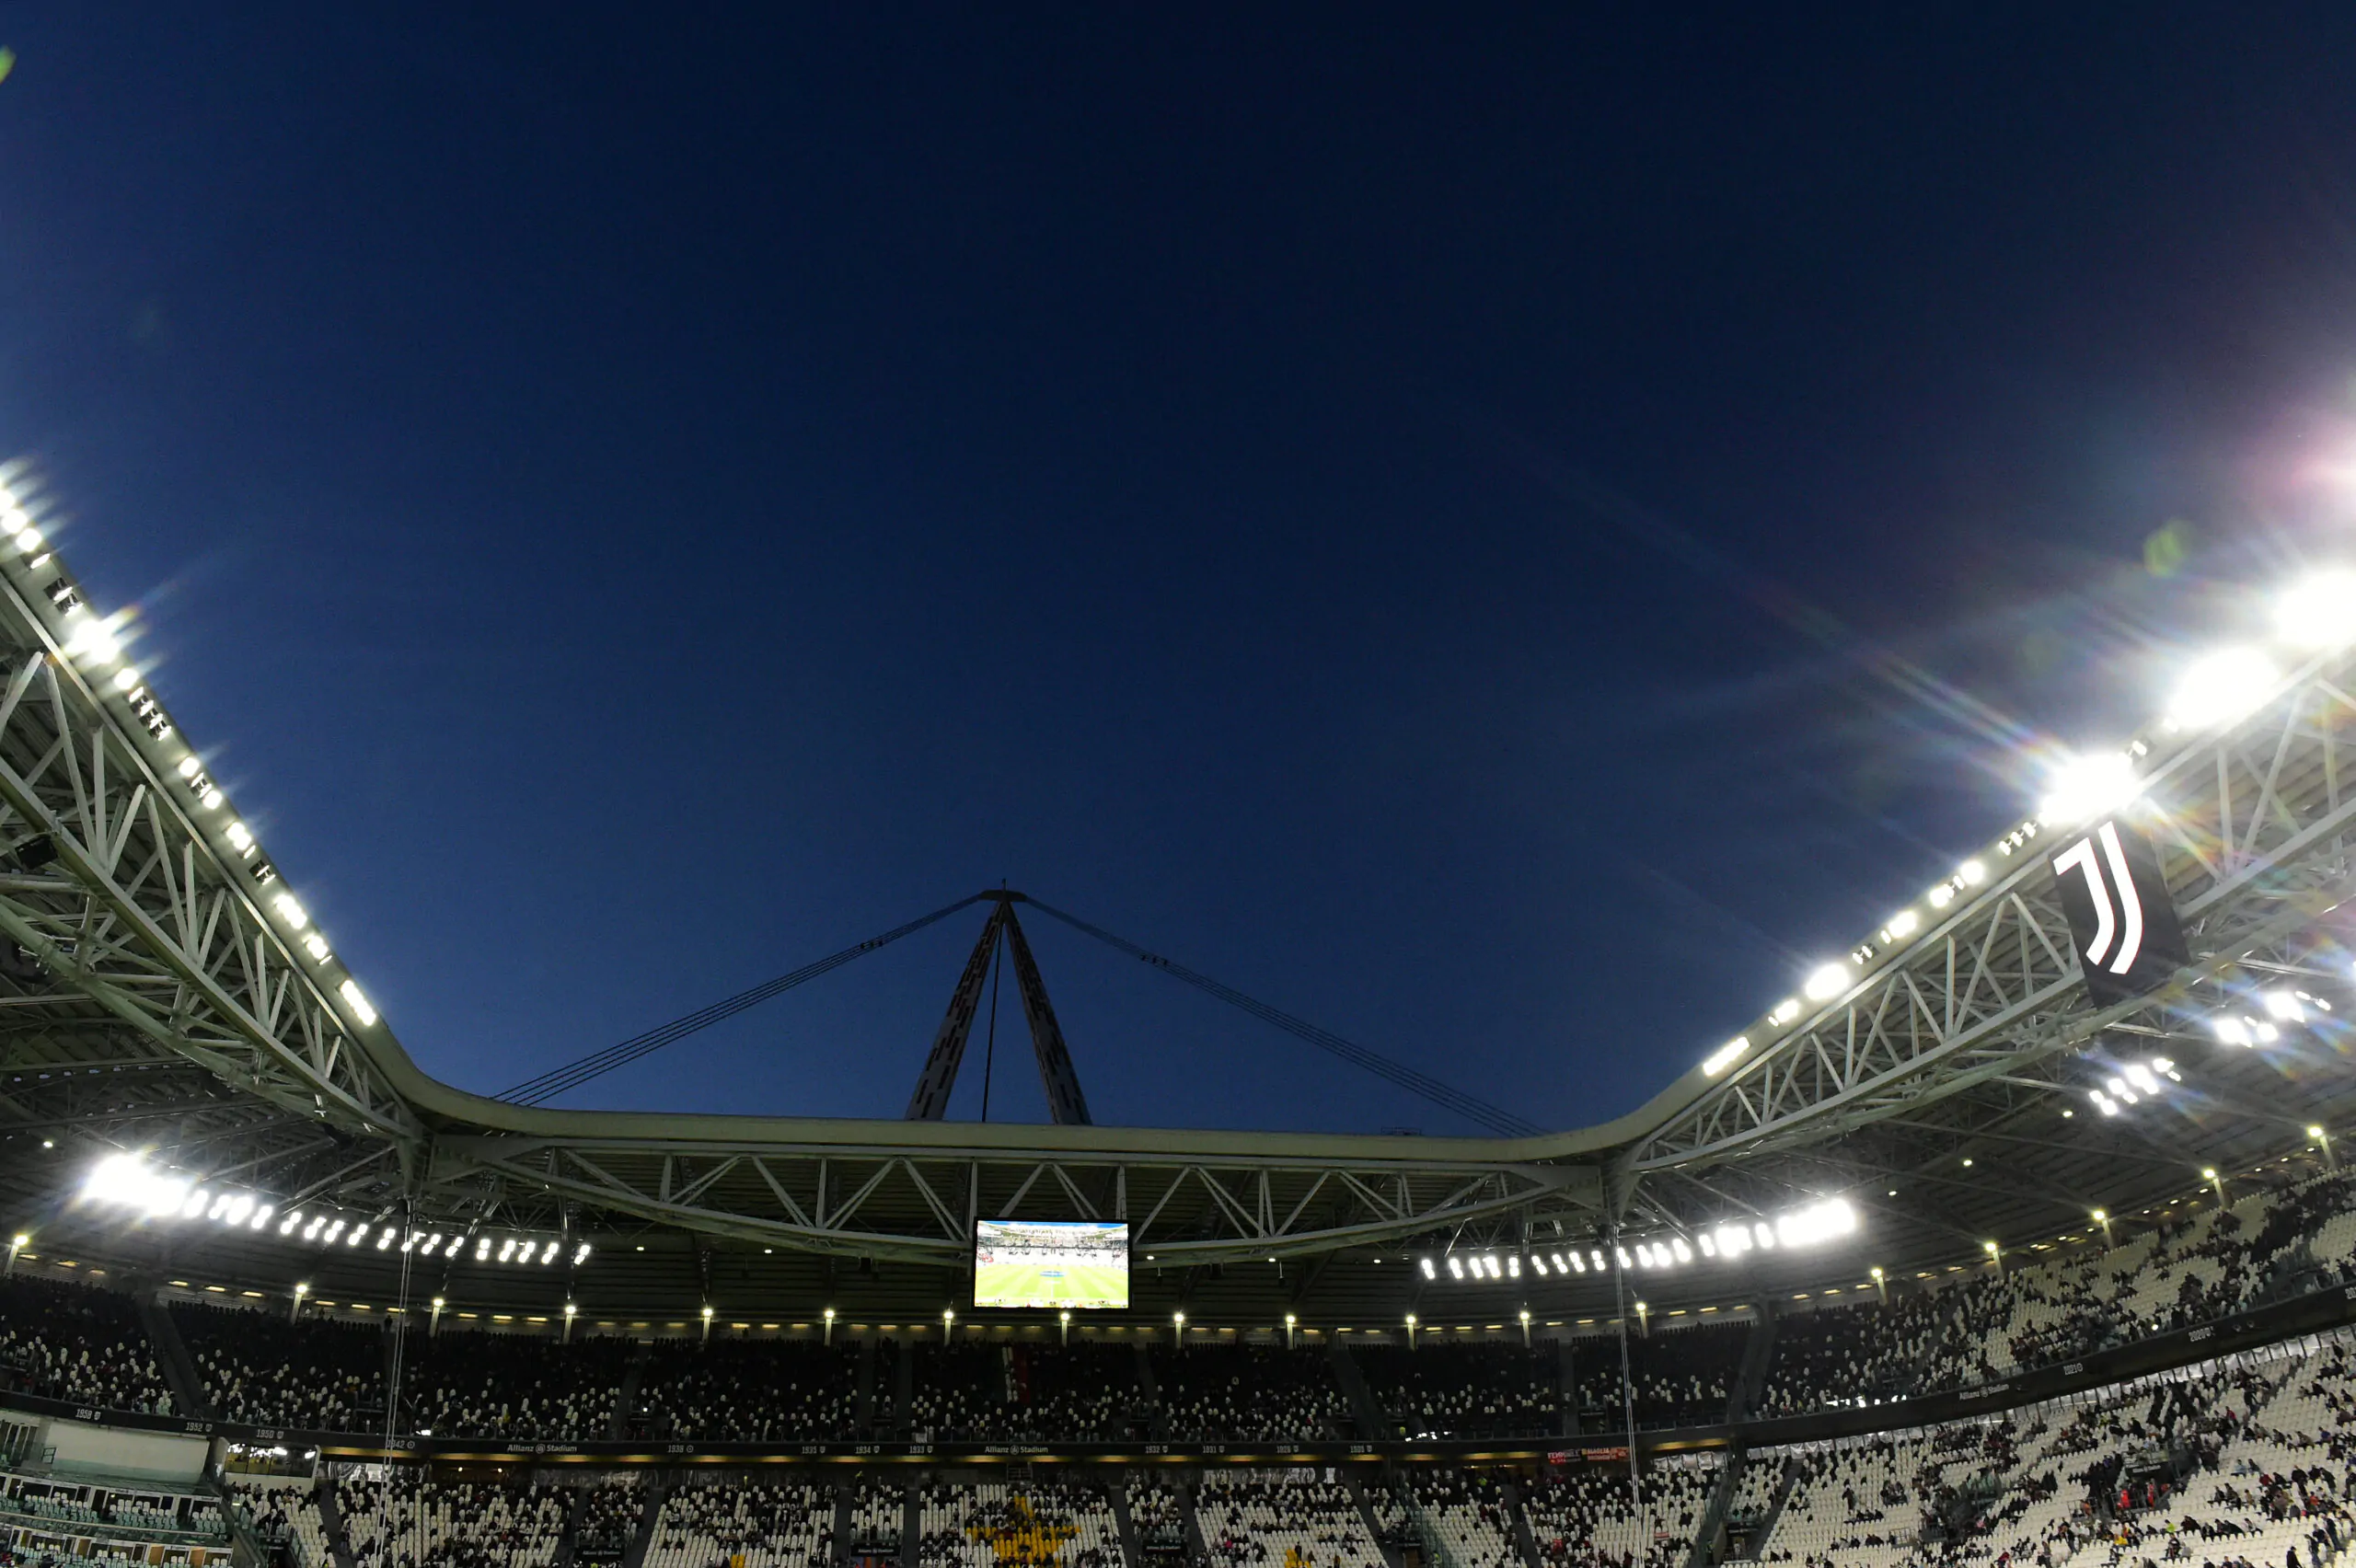 “Operato nel rispetto della legge”, la Juventus rompe il silenzio sul caso plusvalenze